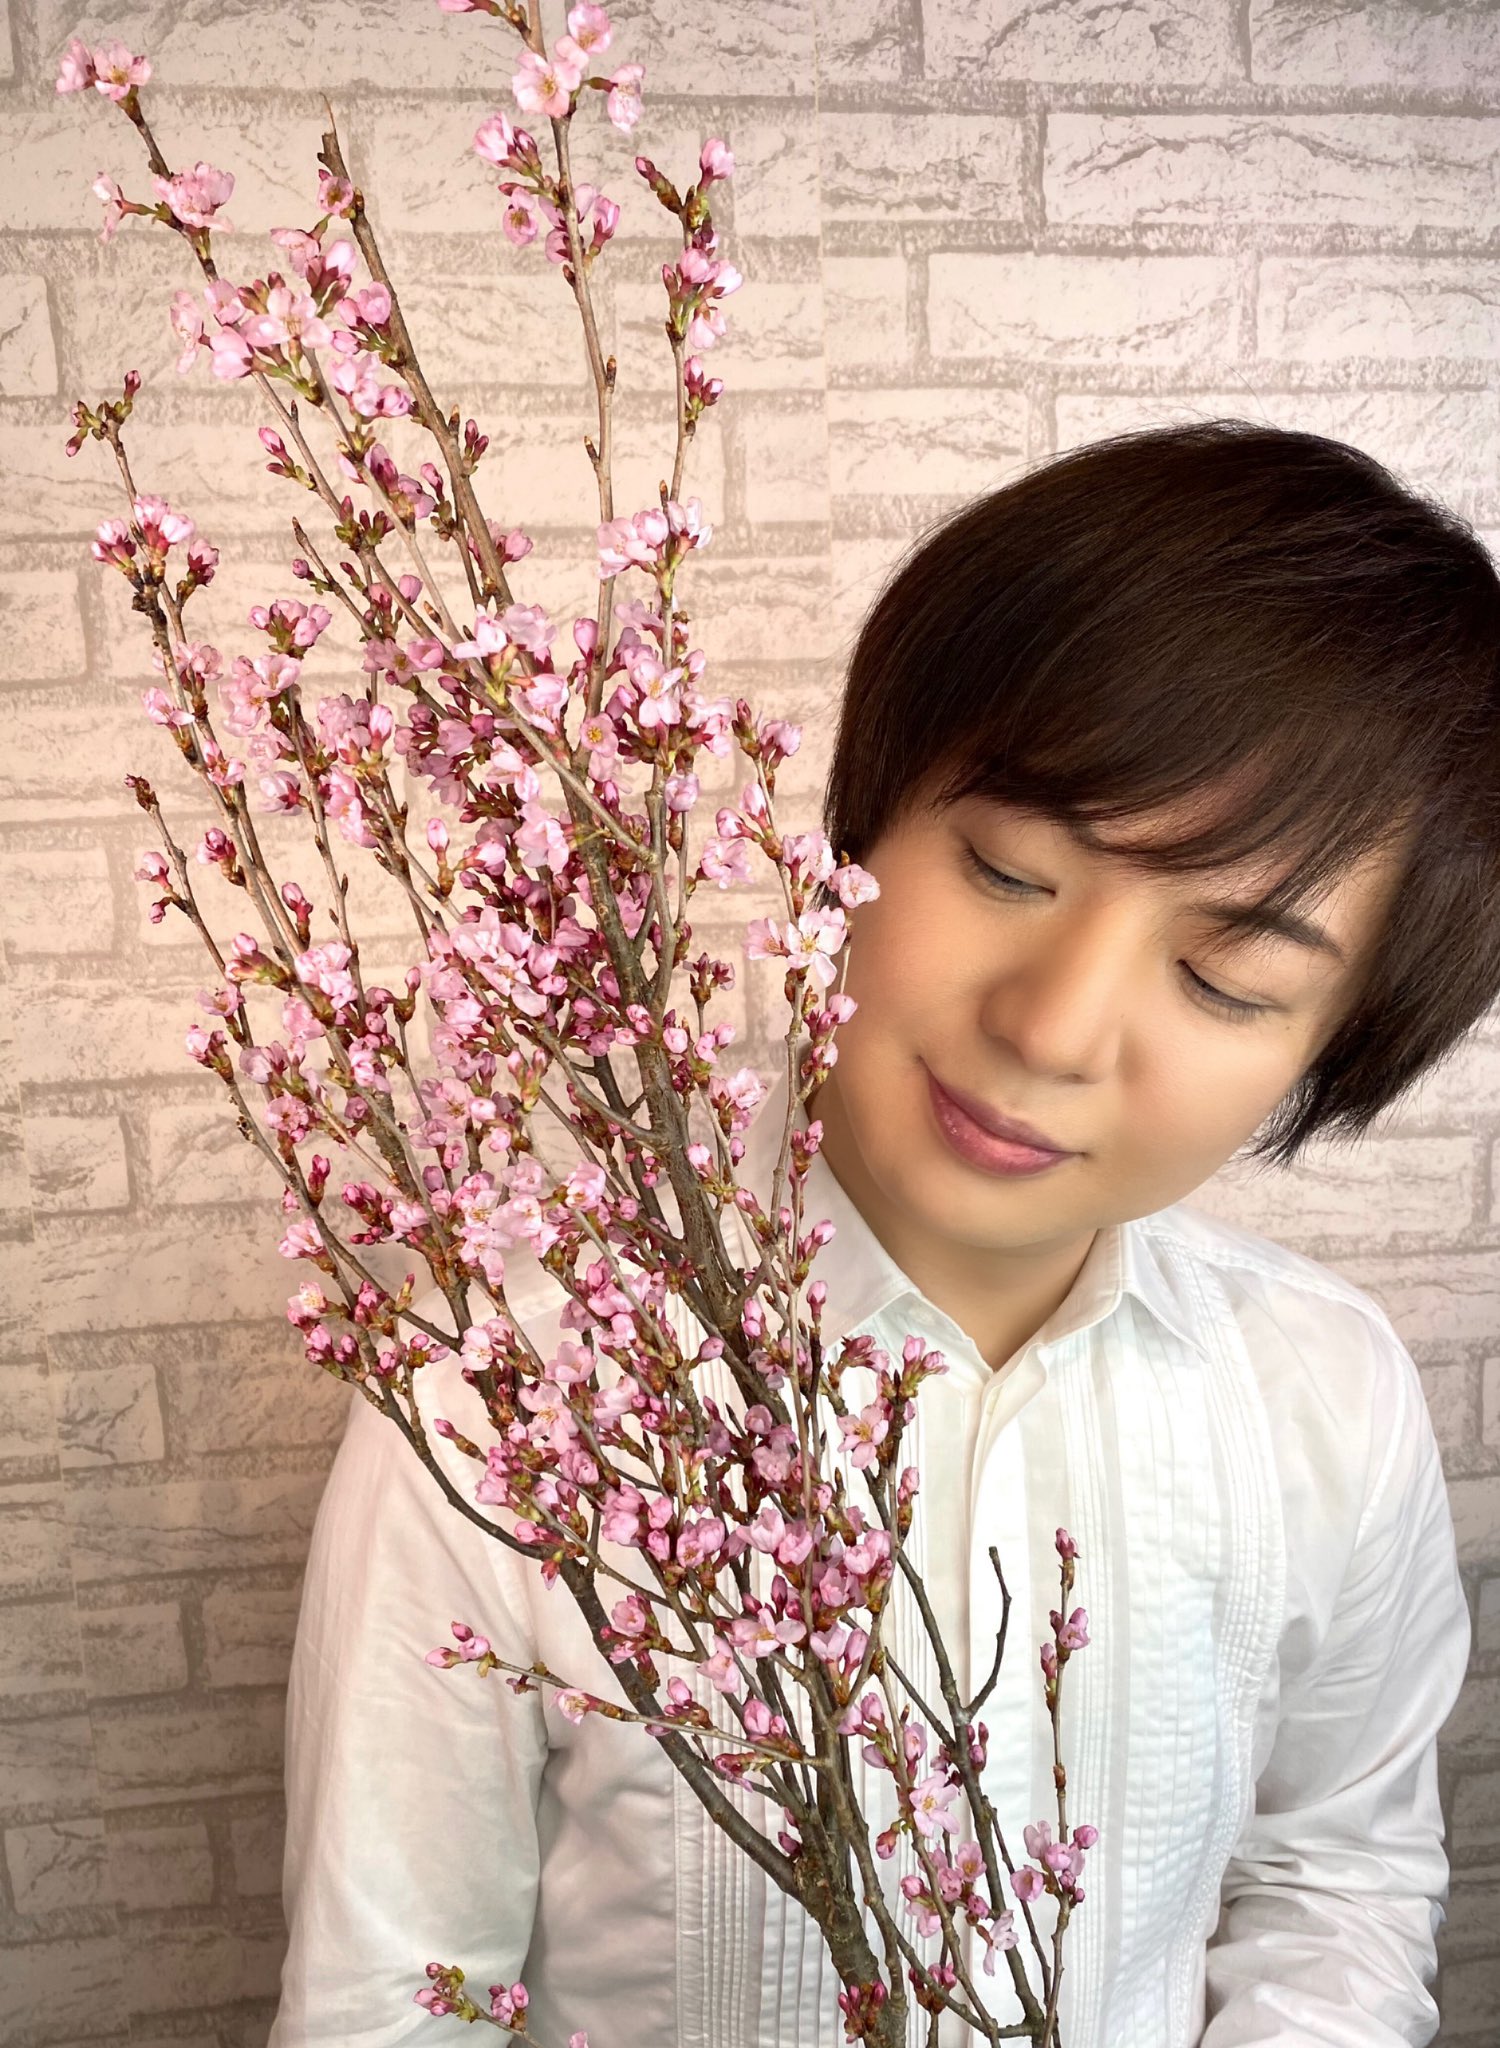 竹島宏スタッフ 公式 彼岸桜 花言葉は 心の平安 0以上の品種がある桜 全種見てみたいですよね 今日も１日お疲れ様でした ひろネット 花言葉 花便り 花 彼岸桜 桜 花を贈ろう 花のある暮らし 花のある生活 感謝 絆 花の癒し 花の